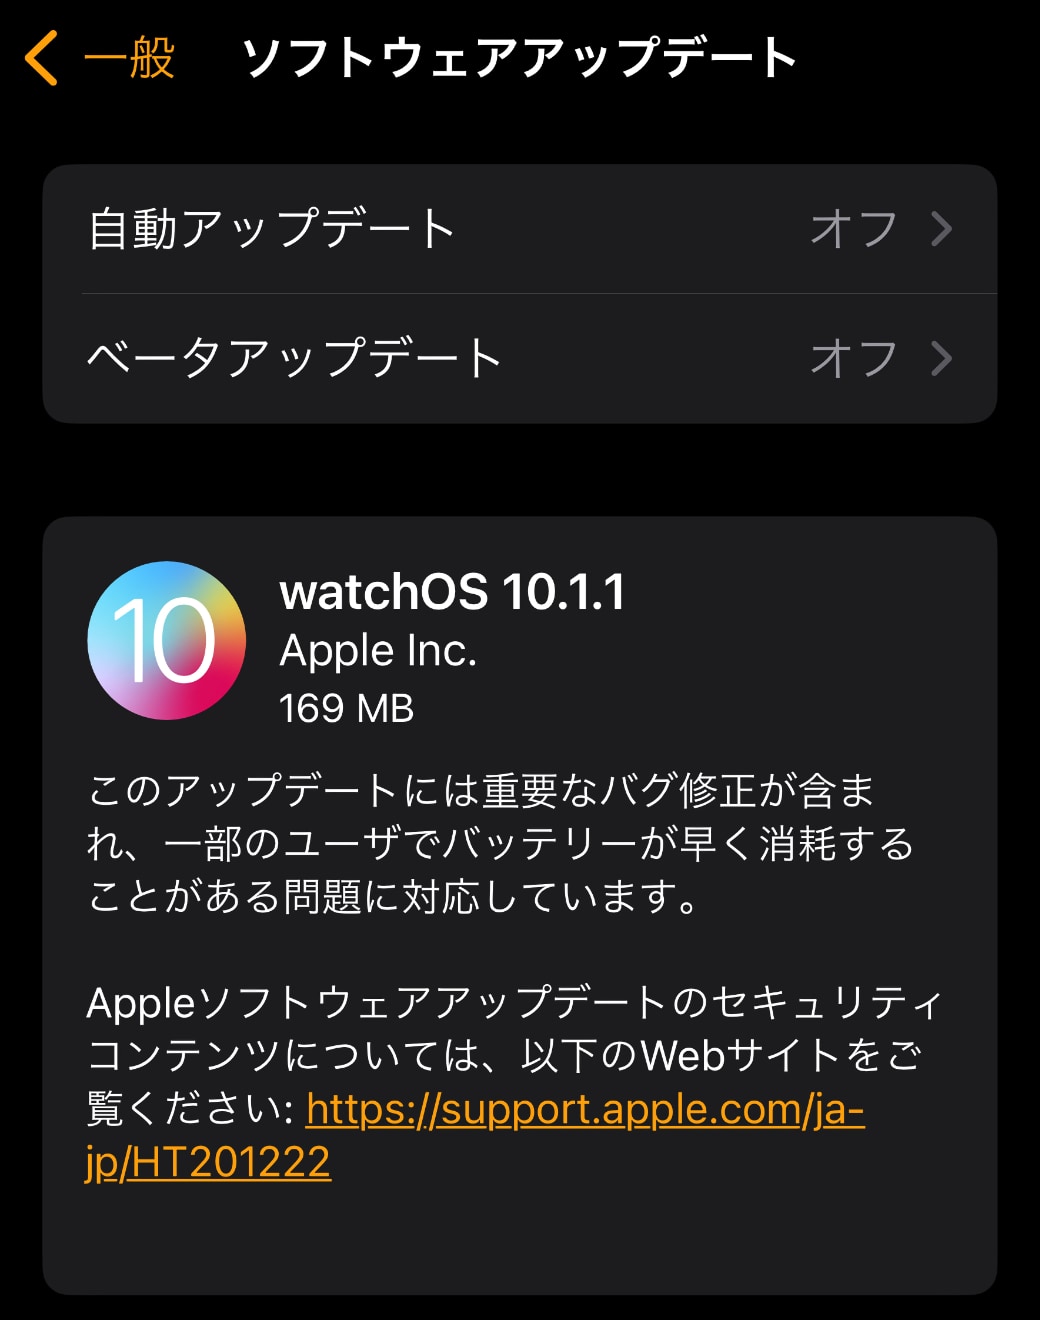 watchOS 10.1.1